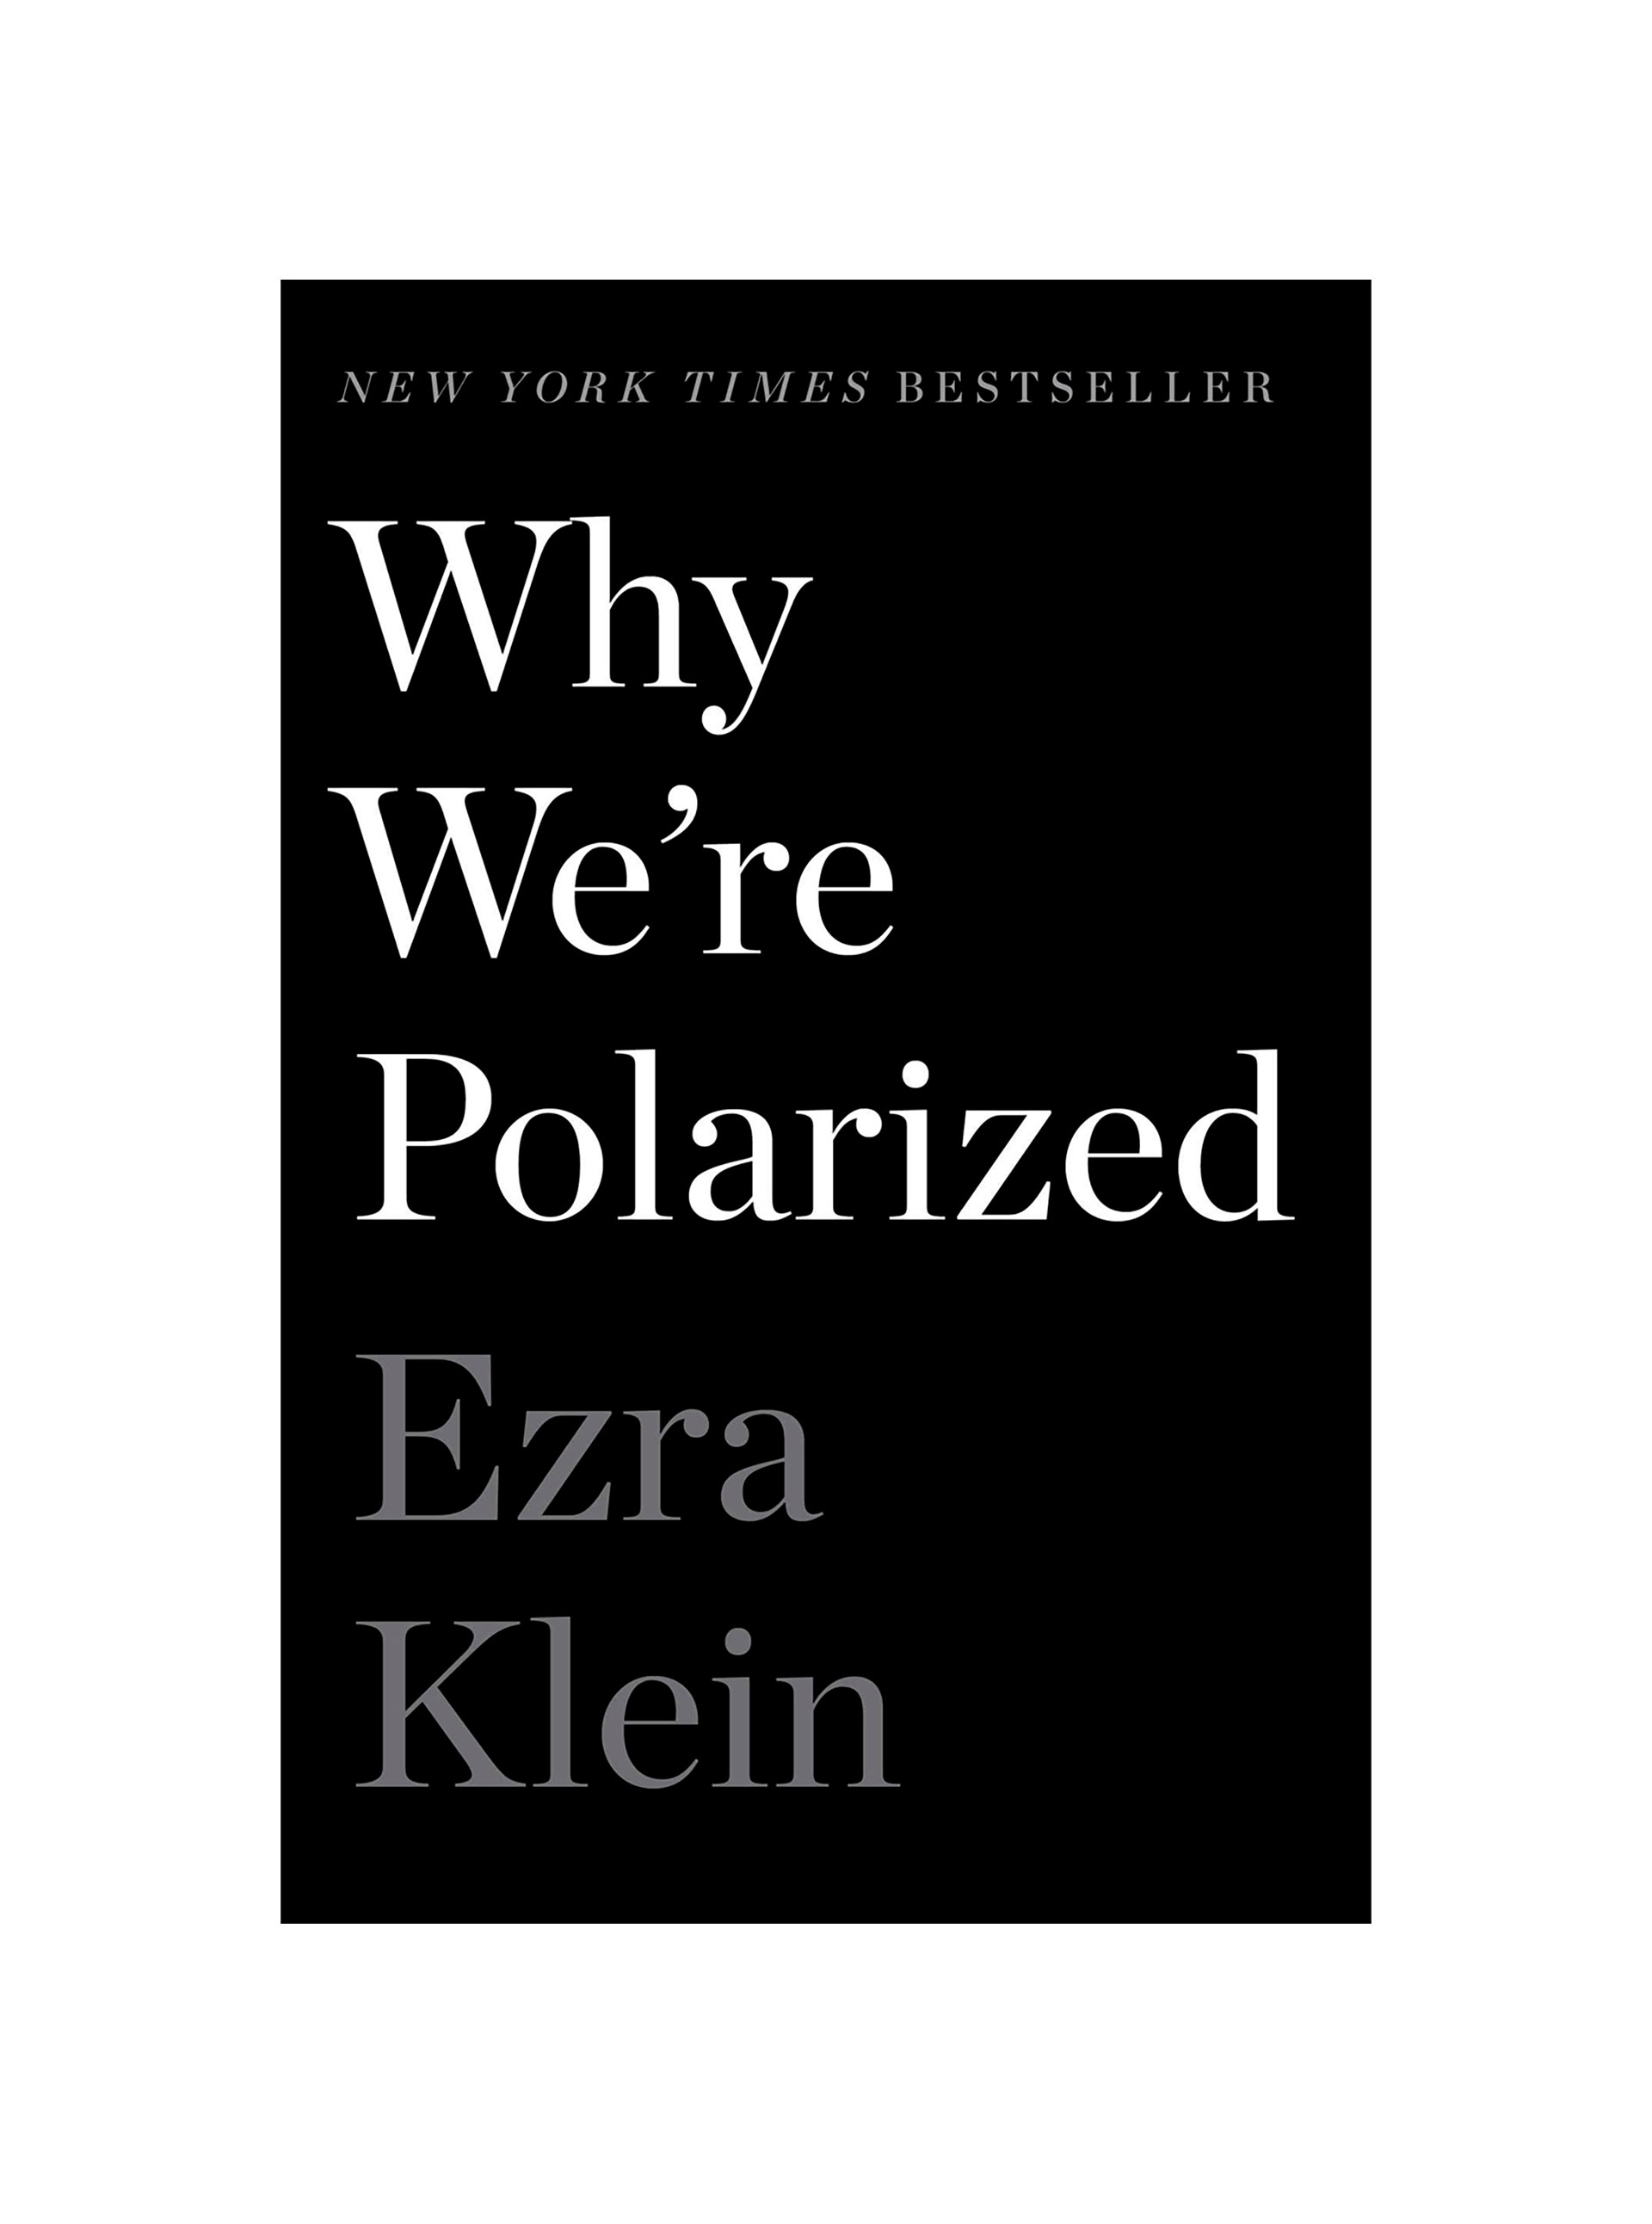 Why We’re Polarized, de Ezra Klein